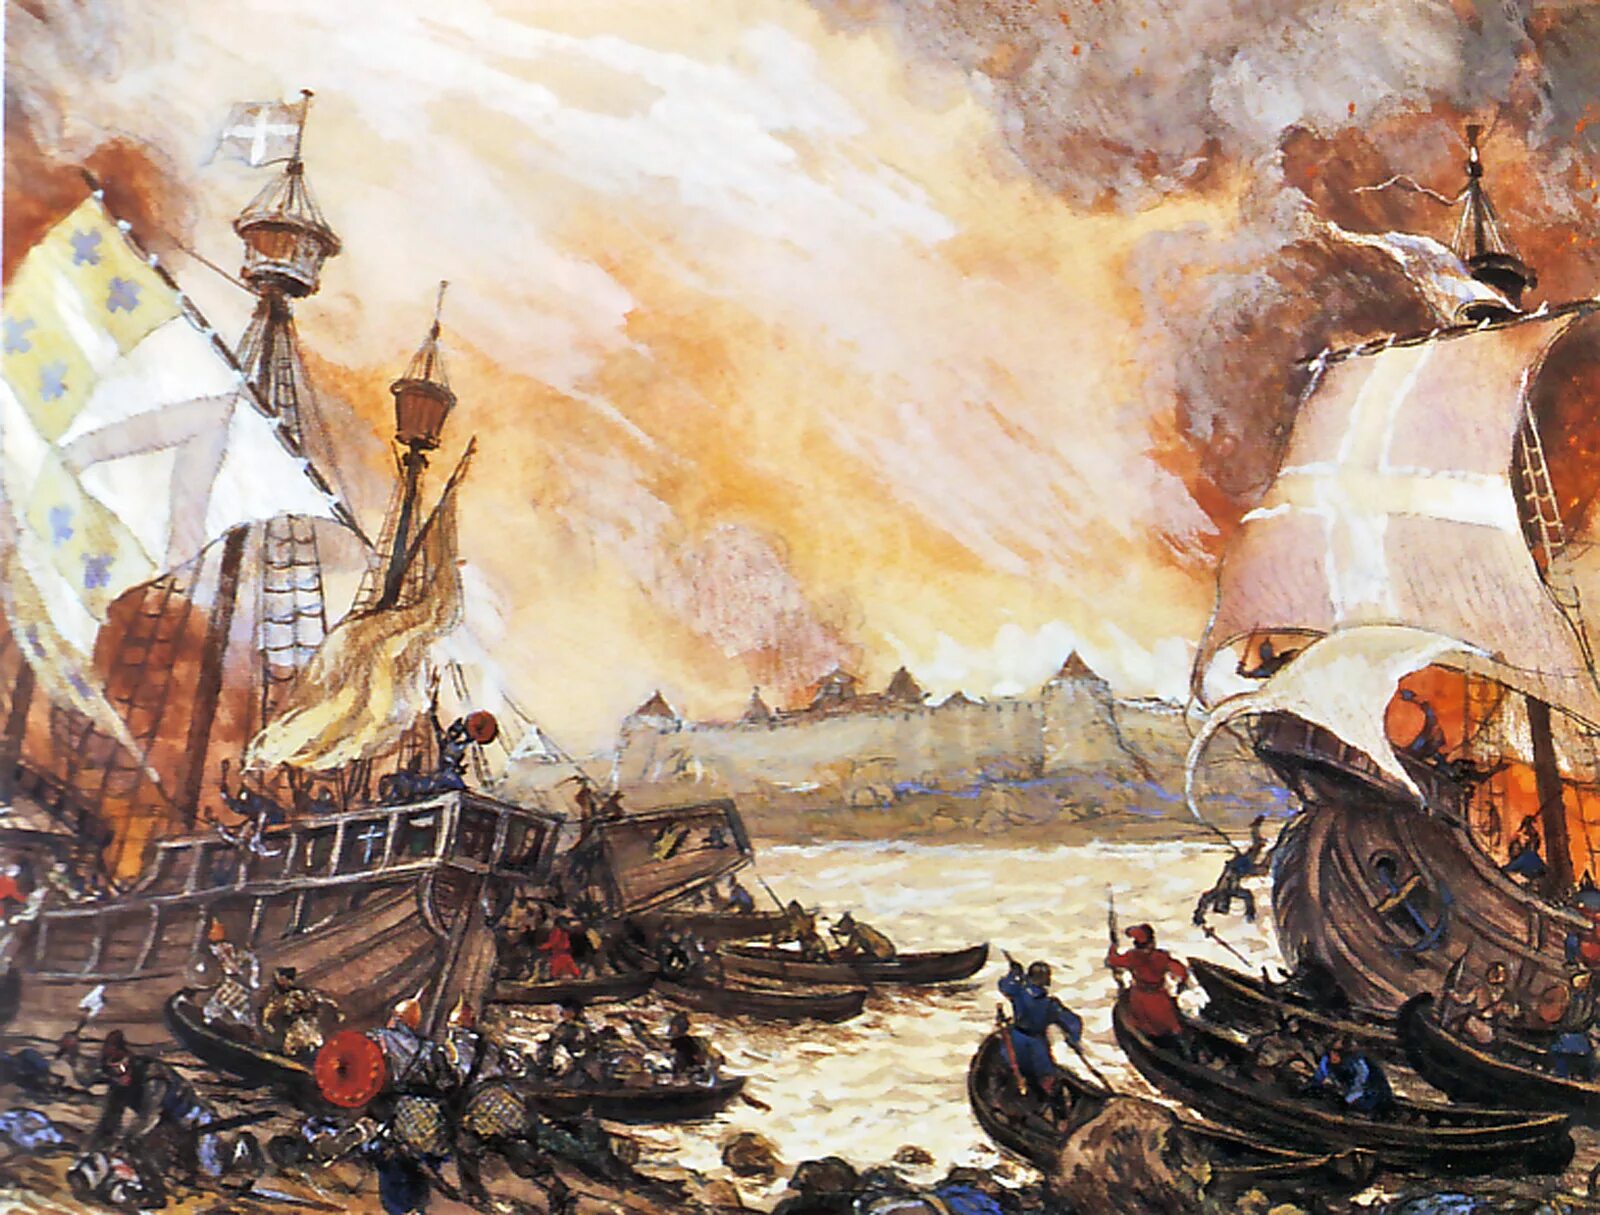 Сражение новгородцев со шведами у крепости Ладога в 1164 году. Невская битва корабли Шведов.